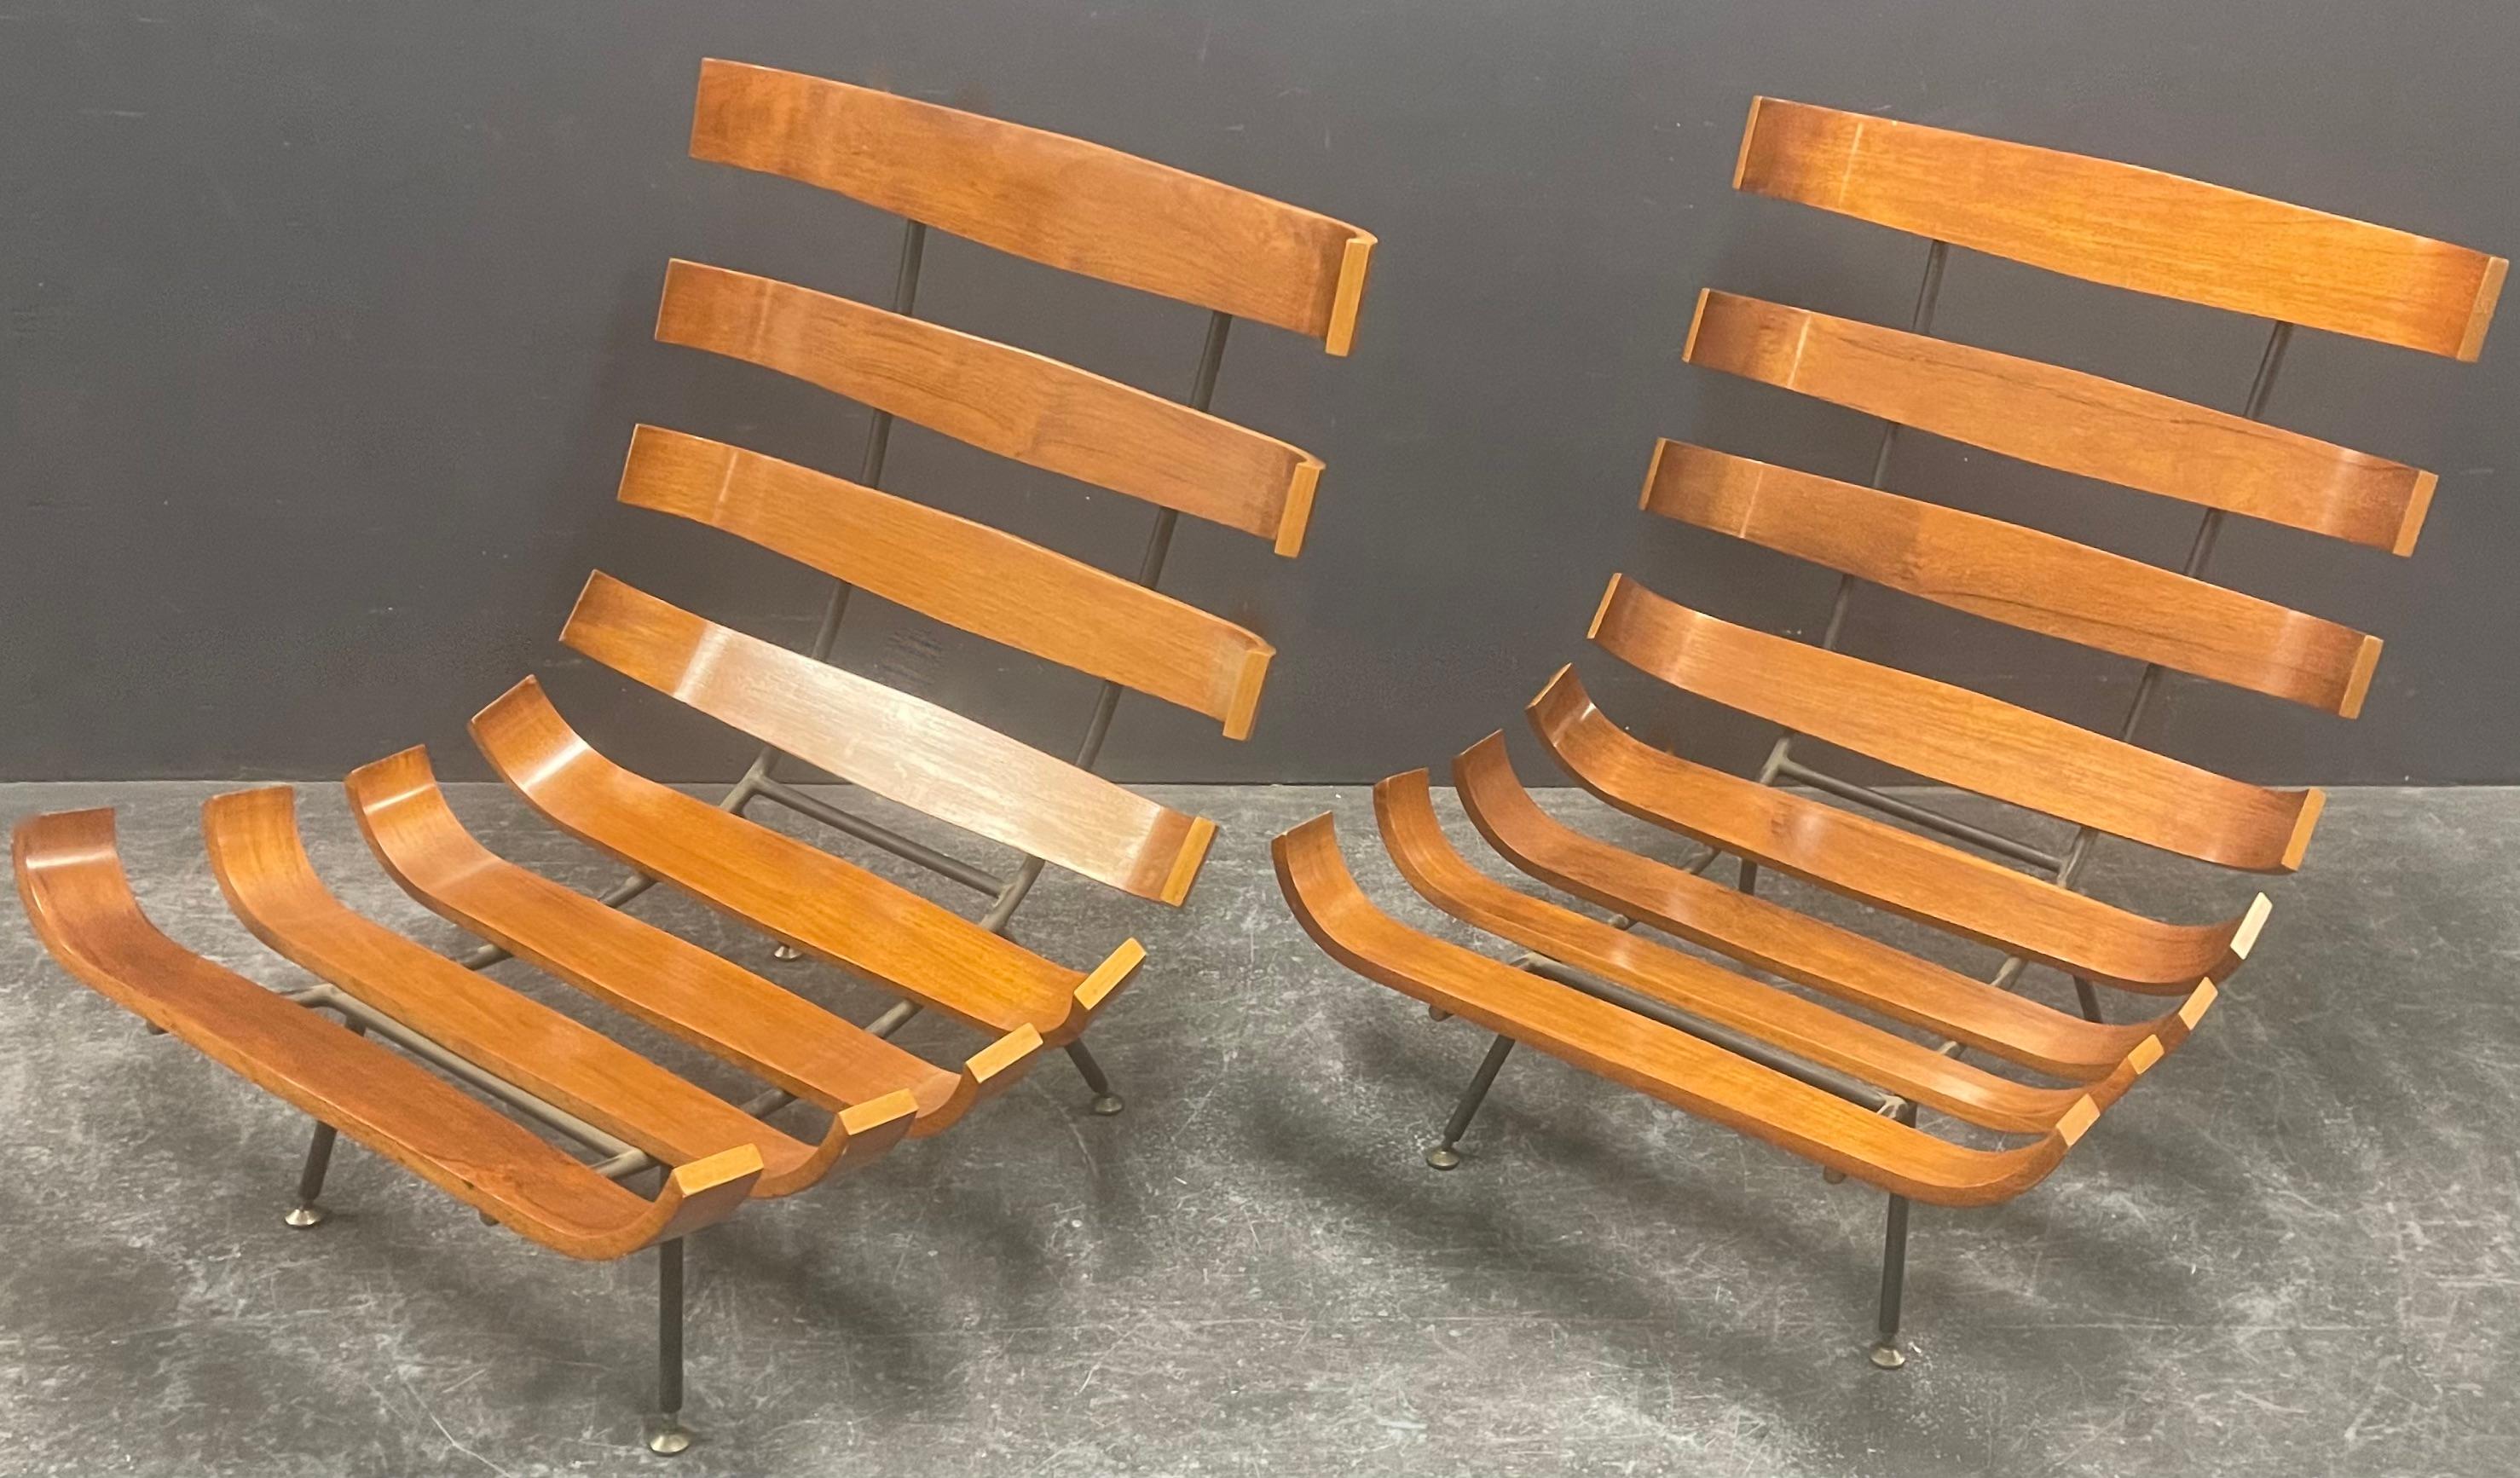 magnifique paire de chaises longues Carlo Hauner et Martin Eisler. fabriquées par forma nova dans les années 50 et toujours en parfait état. le noyer clair est très brillant et les bords sont plus clairs, ce qui donne à la chaise un aspect très